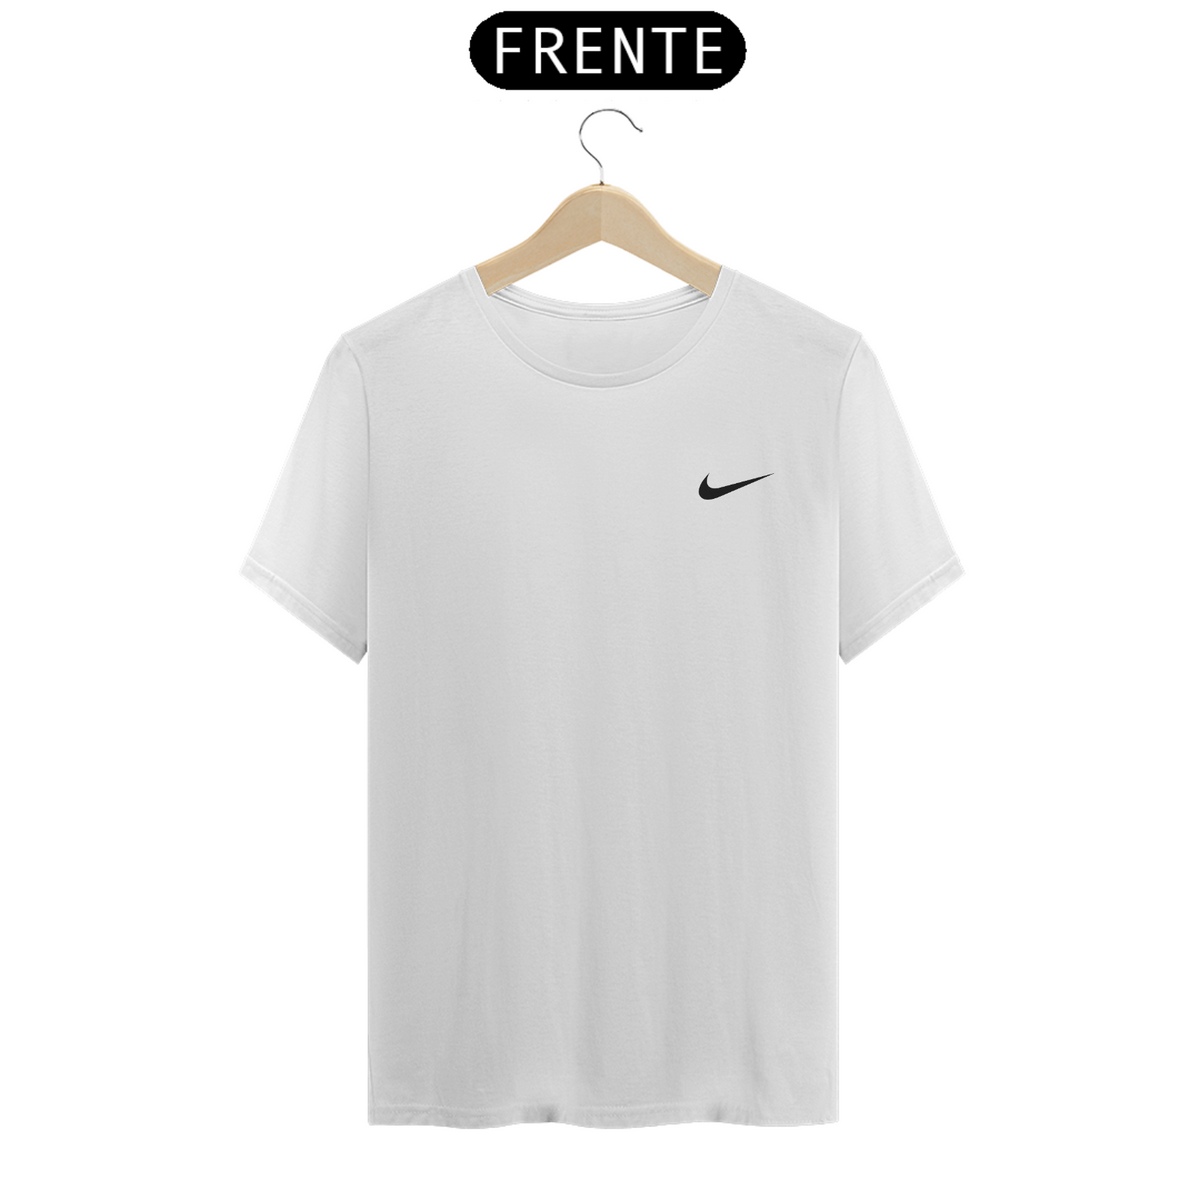 Nome do produto: Camisa Nike Branca